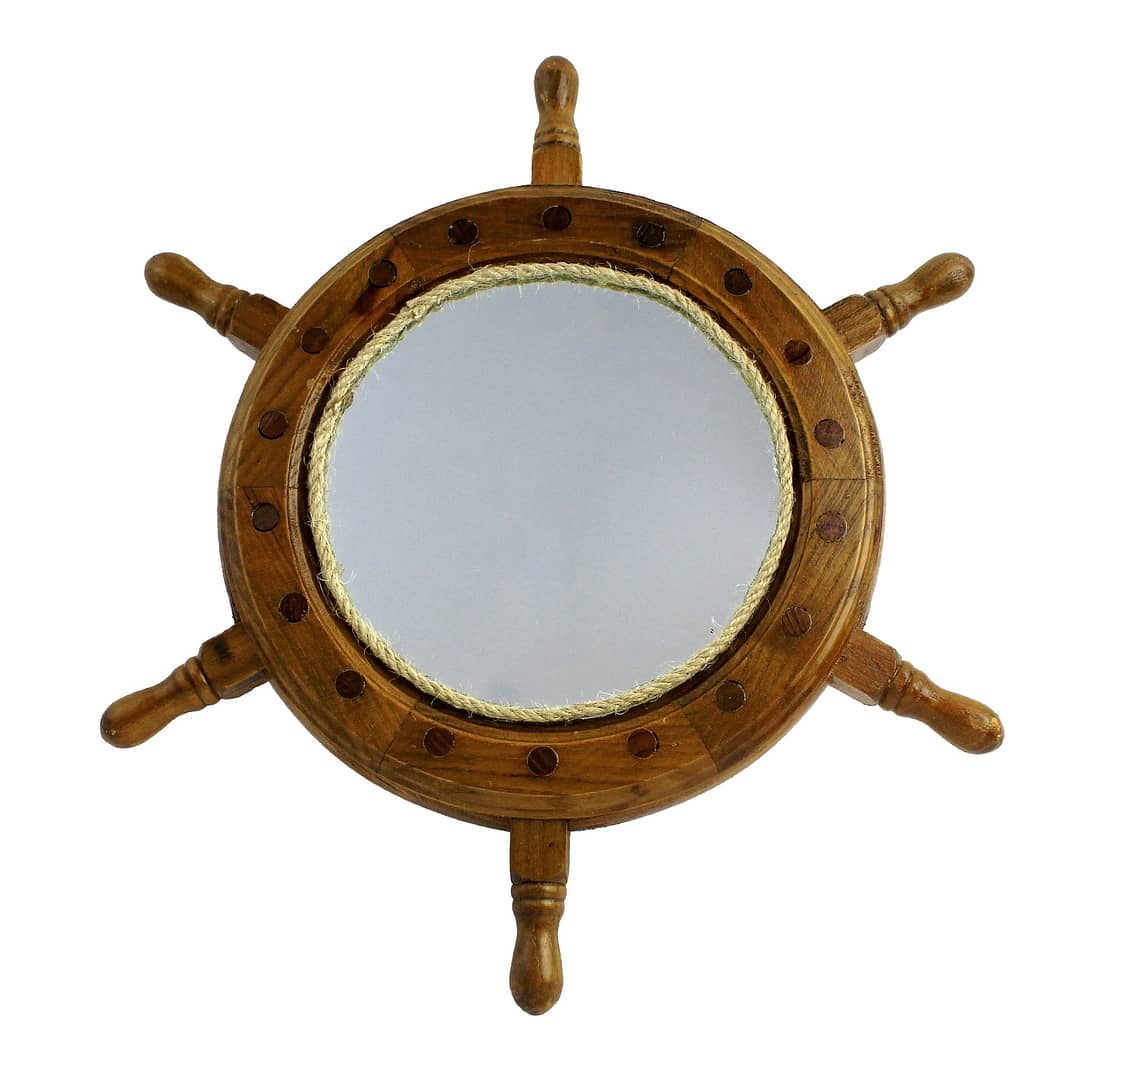 13"Dia Wooden Ship Wheel Wall Mirror